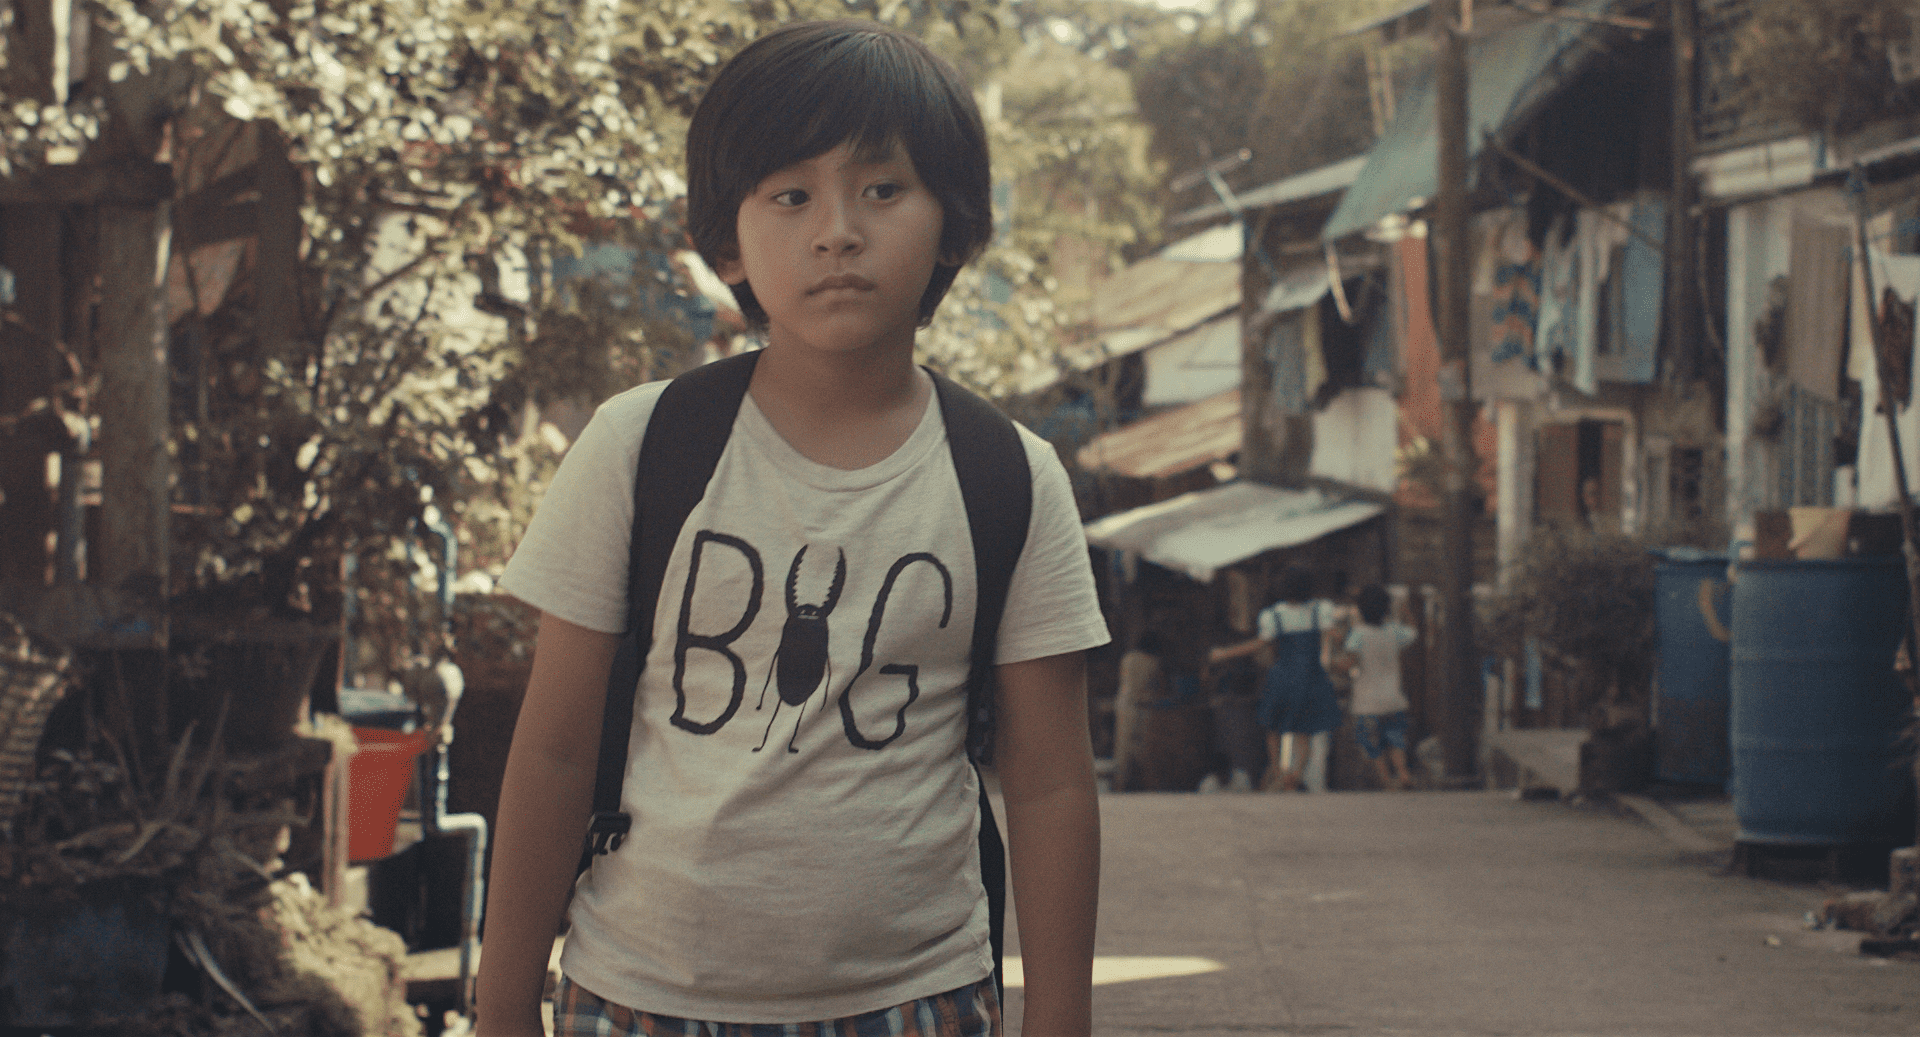 在日ミャンマー人のリアルを描いた映画「僕の帰る場所」の
上映イベントを9月23日(木)に開催